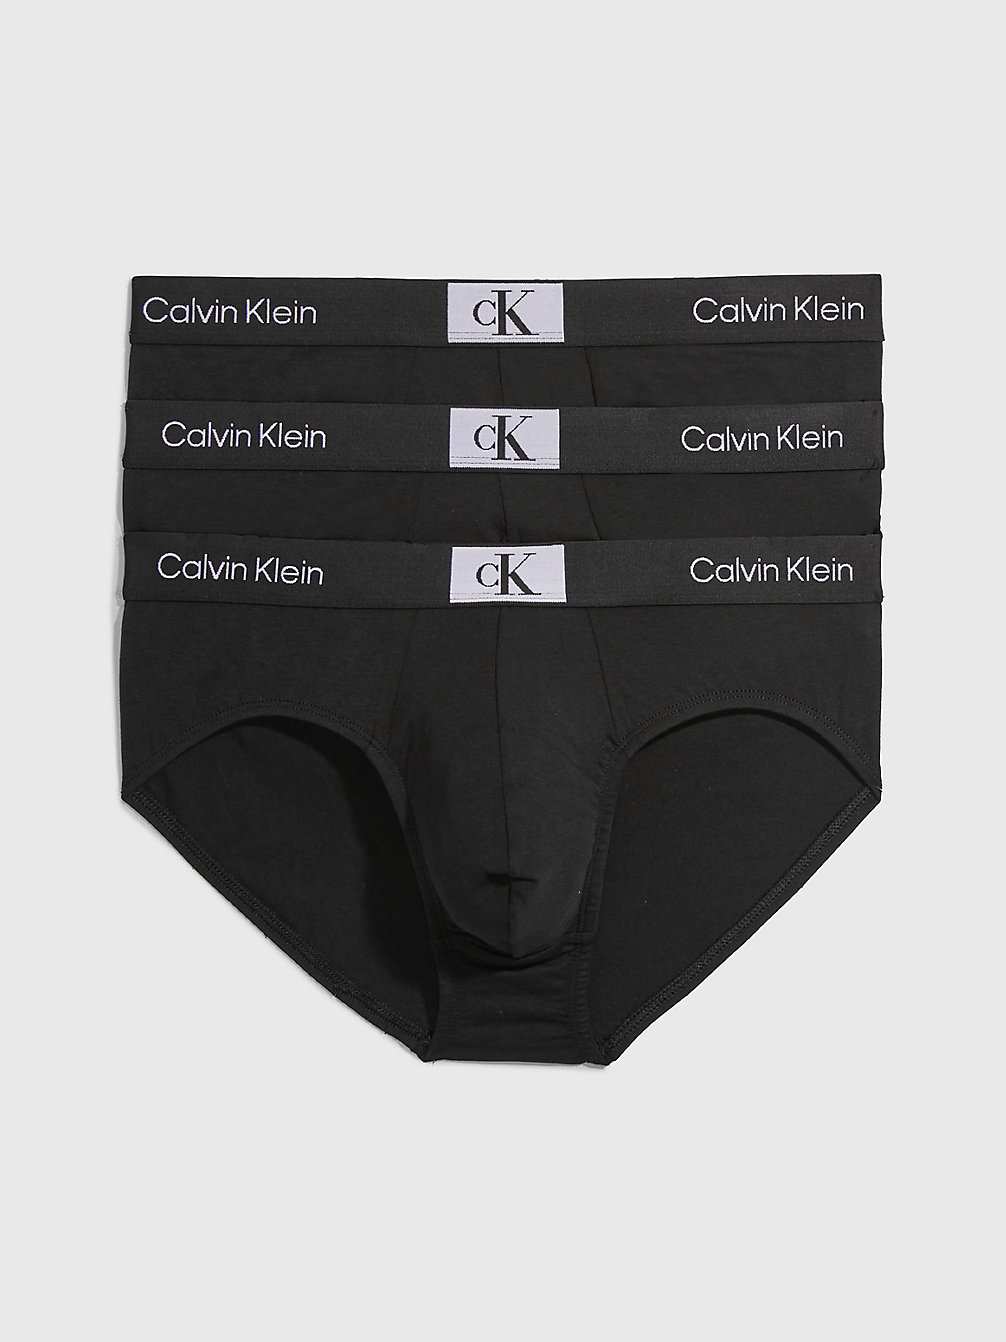 BLACK/ BLACK/ BLACK Slip In Confezione Da 3 - Ck96 undefined uomo Calvin Klein